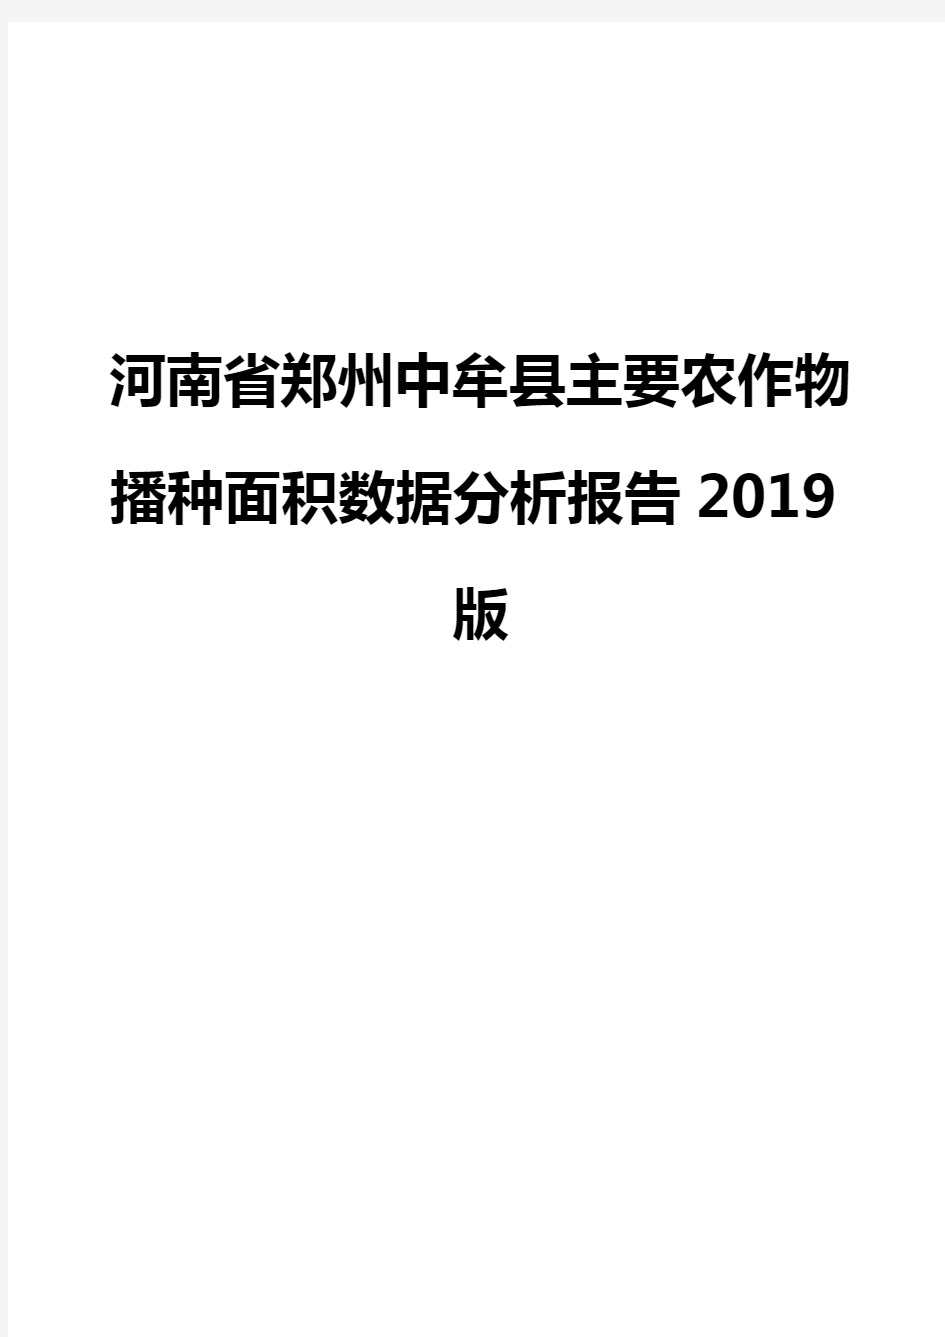 河南省郑州中牟县主要农作物播种面积数据分析报告2019版